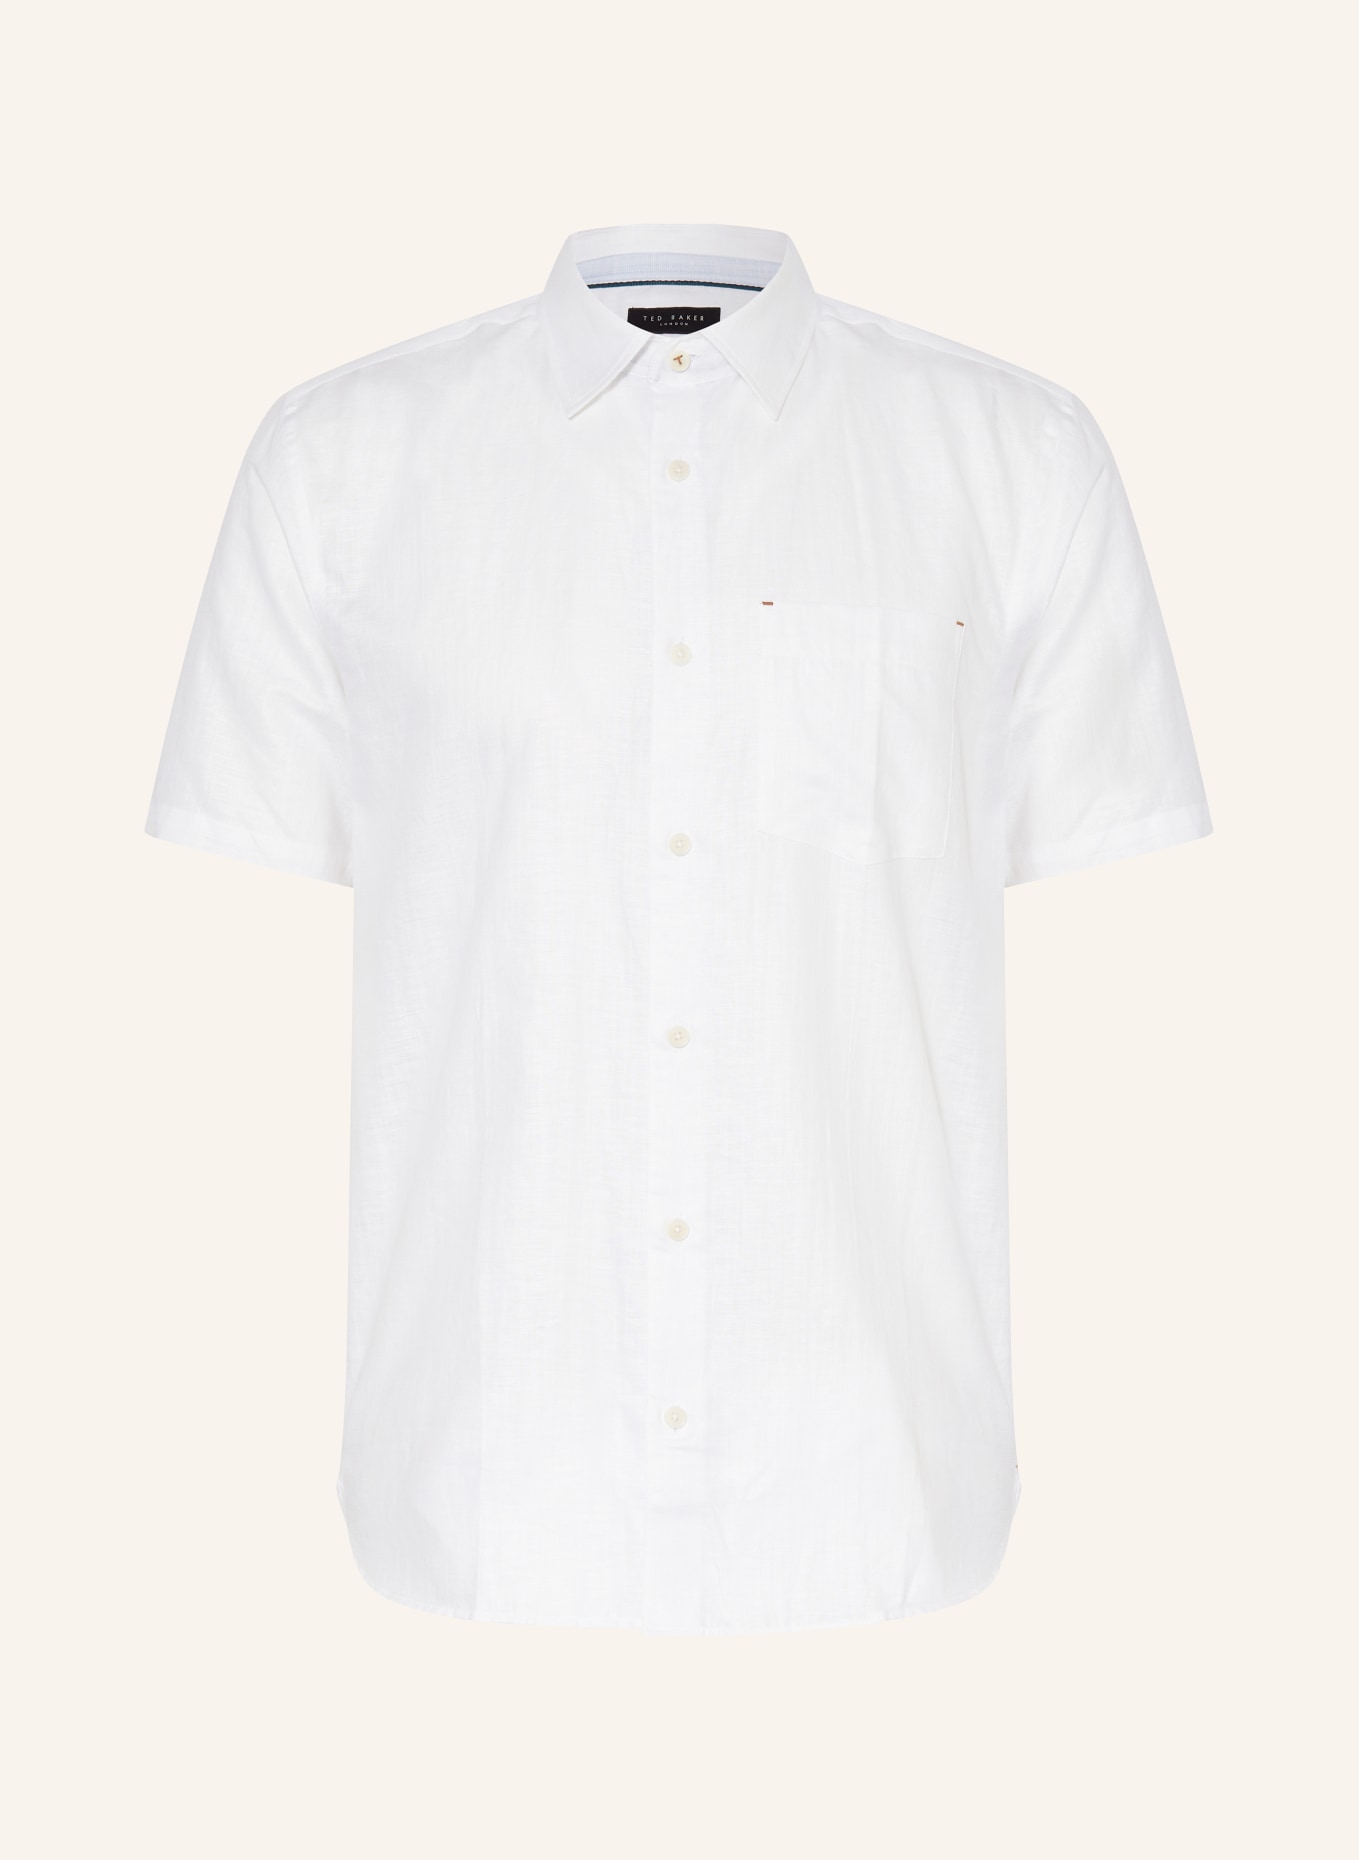 TED BAKER Kurzarm-Hemd PALOMAS Regular Fit mit Leinen, Farbe: WEISS (Bild 1)